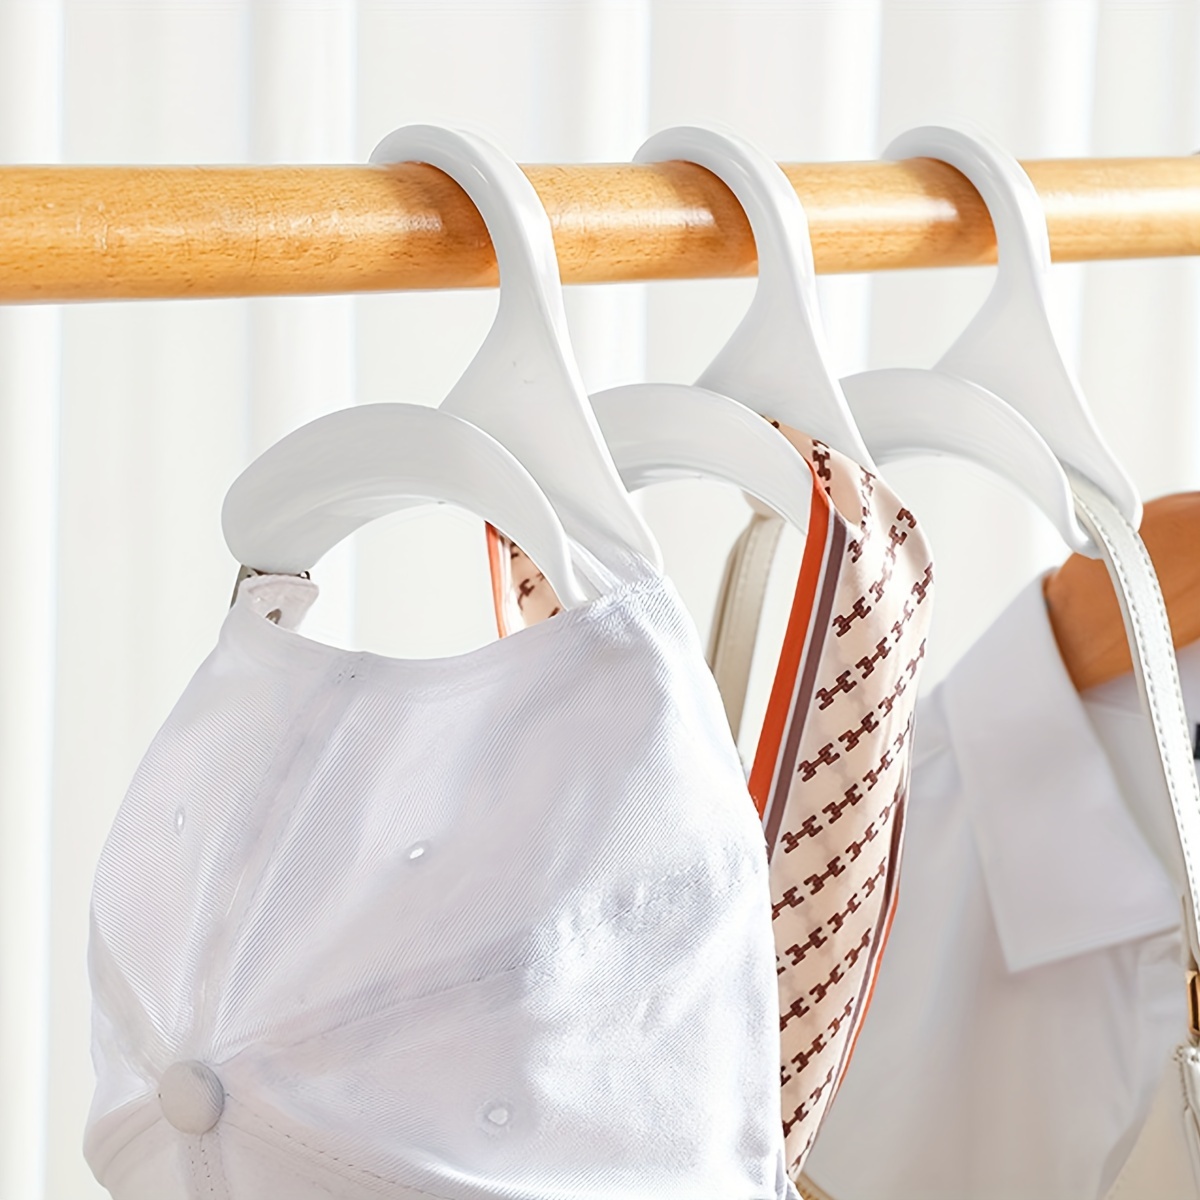 Purse Hanger Hook Bag Rack Holder - Handbag Hanger Organizer Storage - Over  The Closet Rod Hanger For Storing And Organizing Purses | Backpacks |Satch